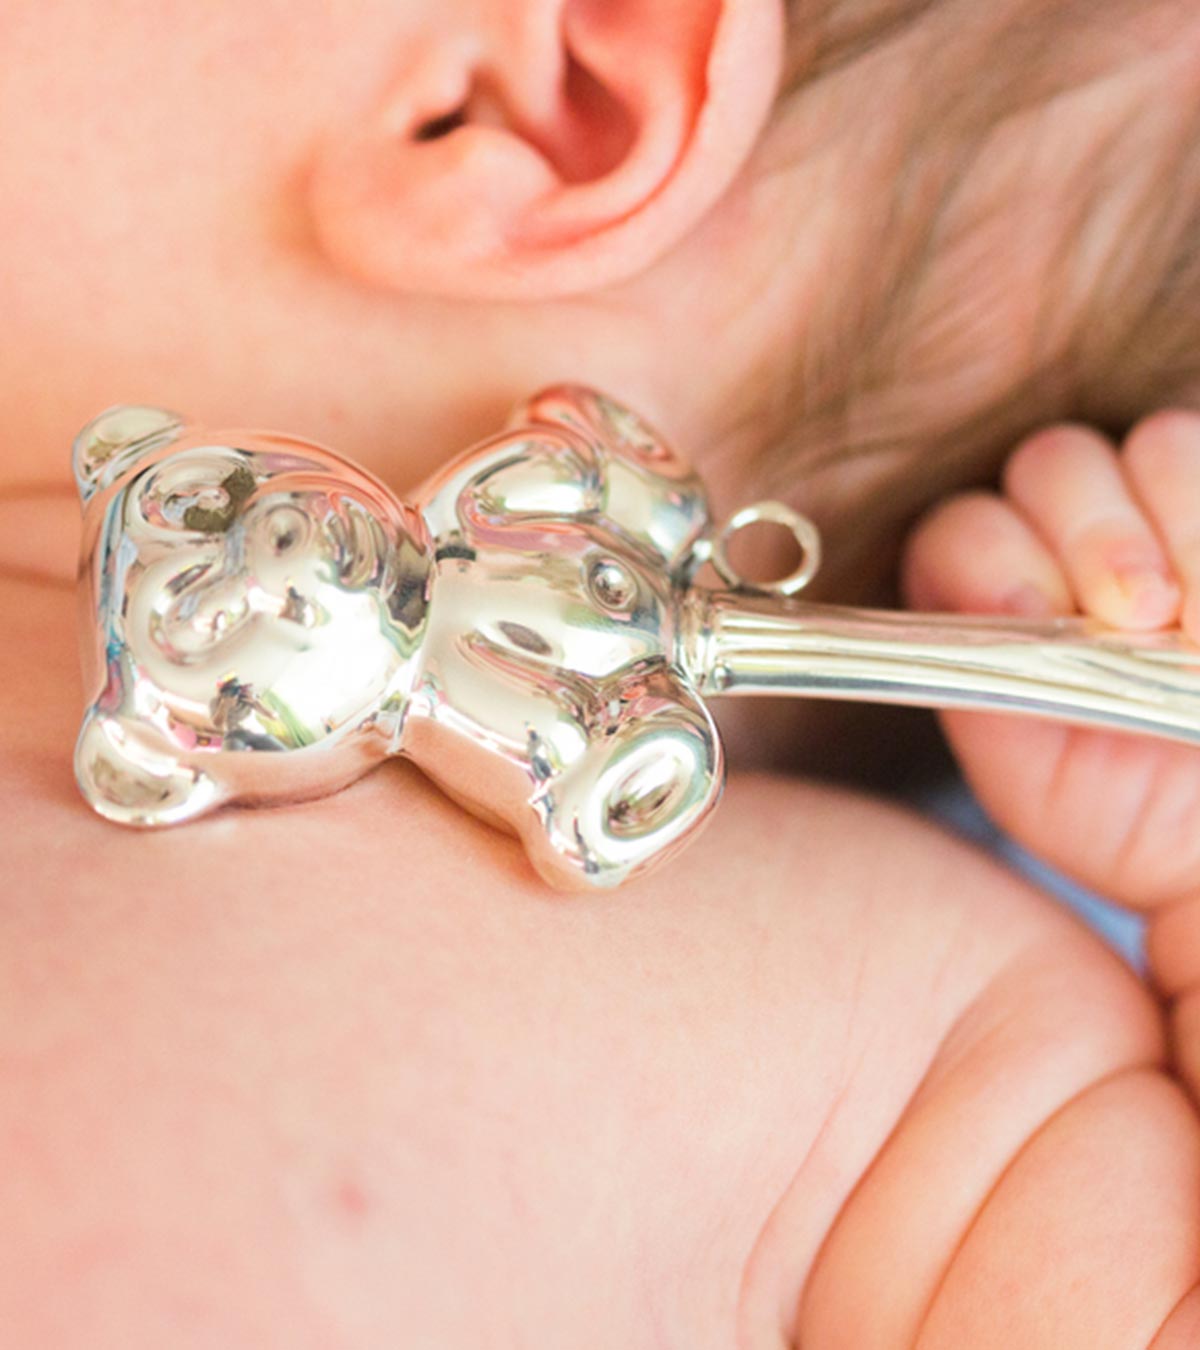 婴儿用银餐具:它们安全吗?好处和使用技巧